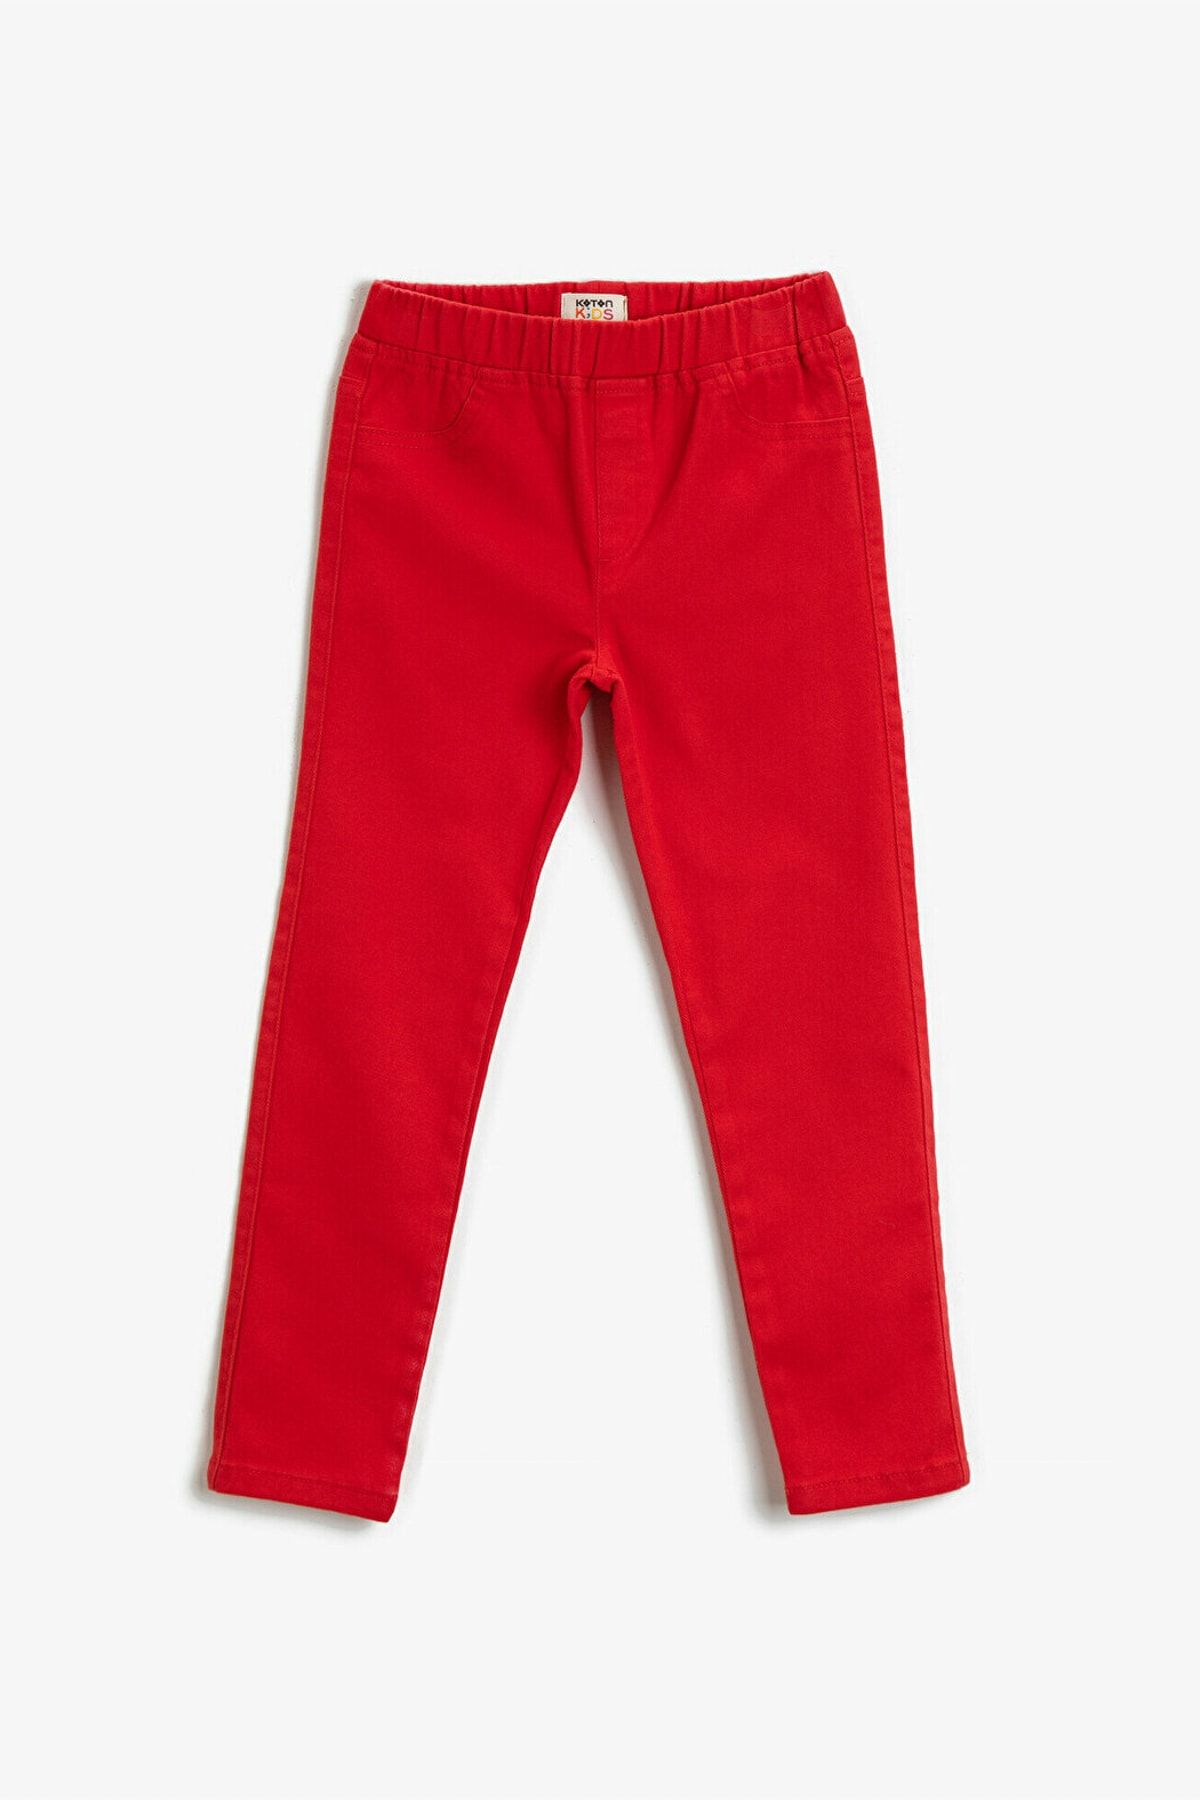 Koton Kız Çocuk Kırmızı Pamuklu Pantolon